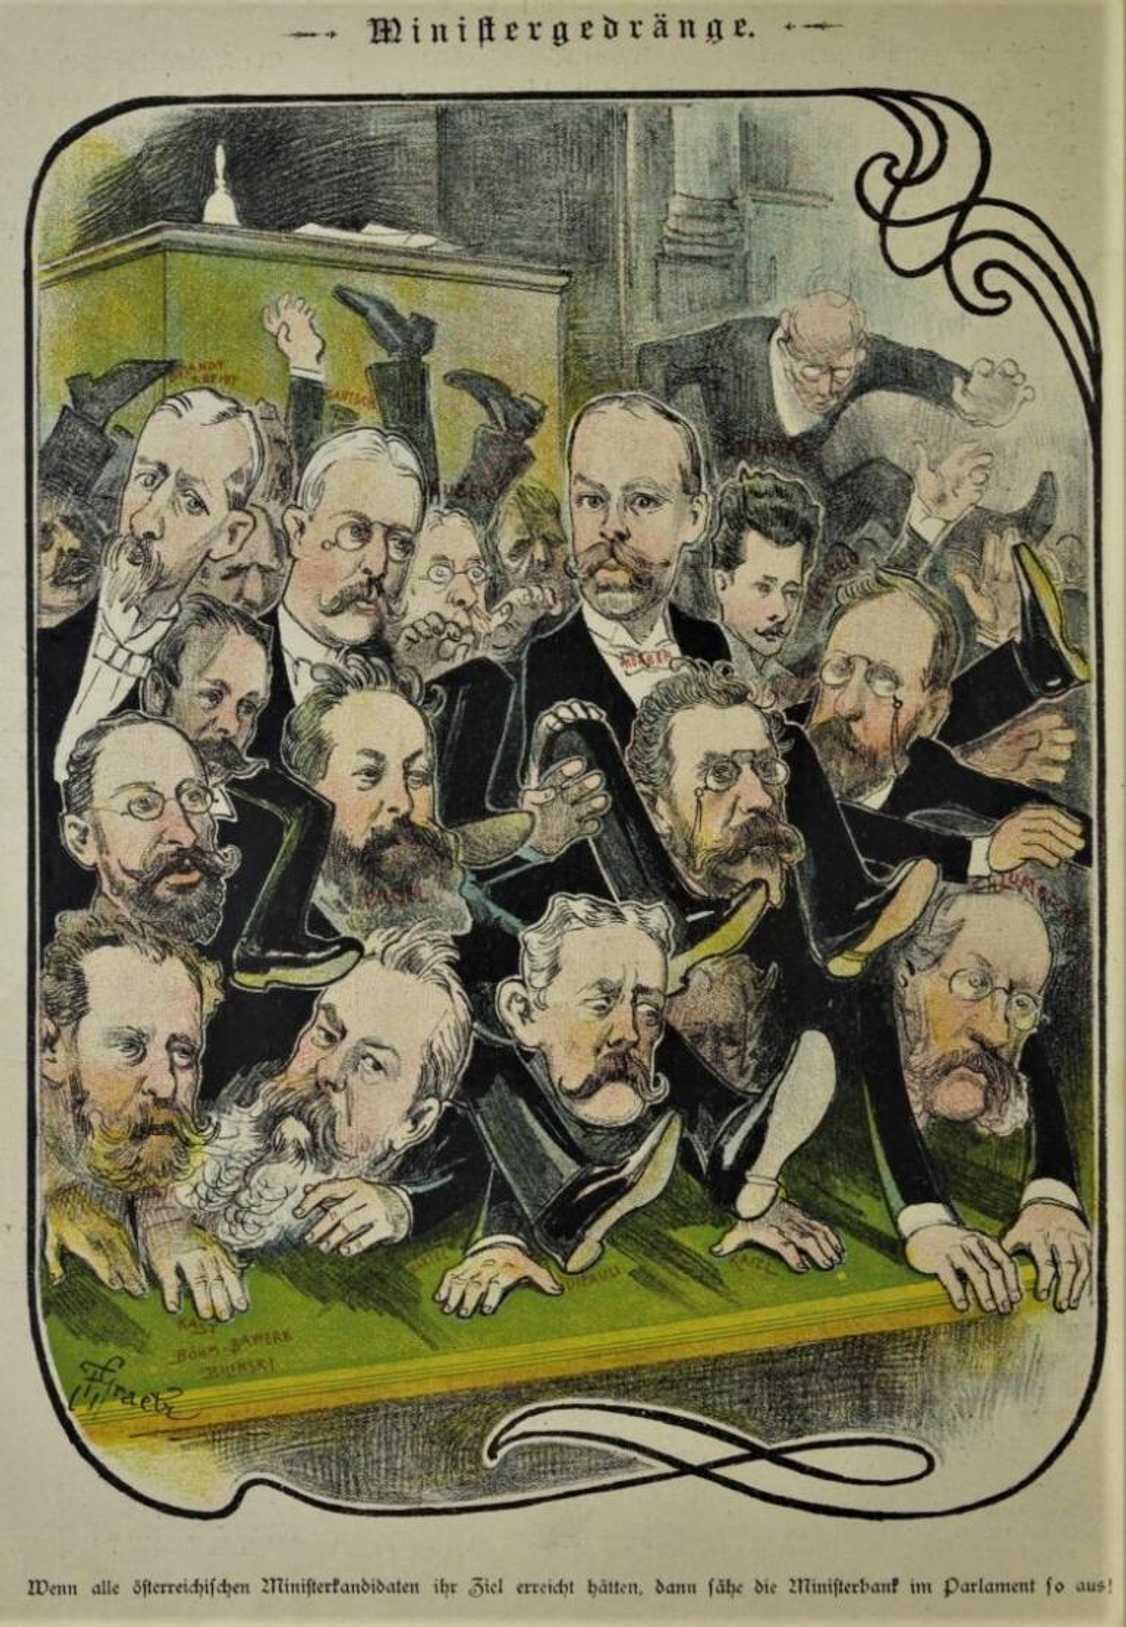 Ministergedränge / Ministerská tlačenice (Glühlichter, 1. 2. 1900)
